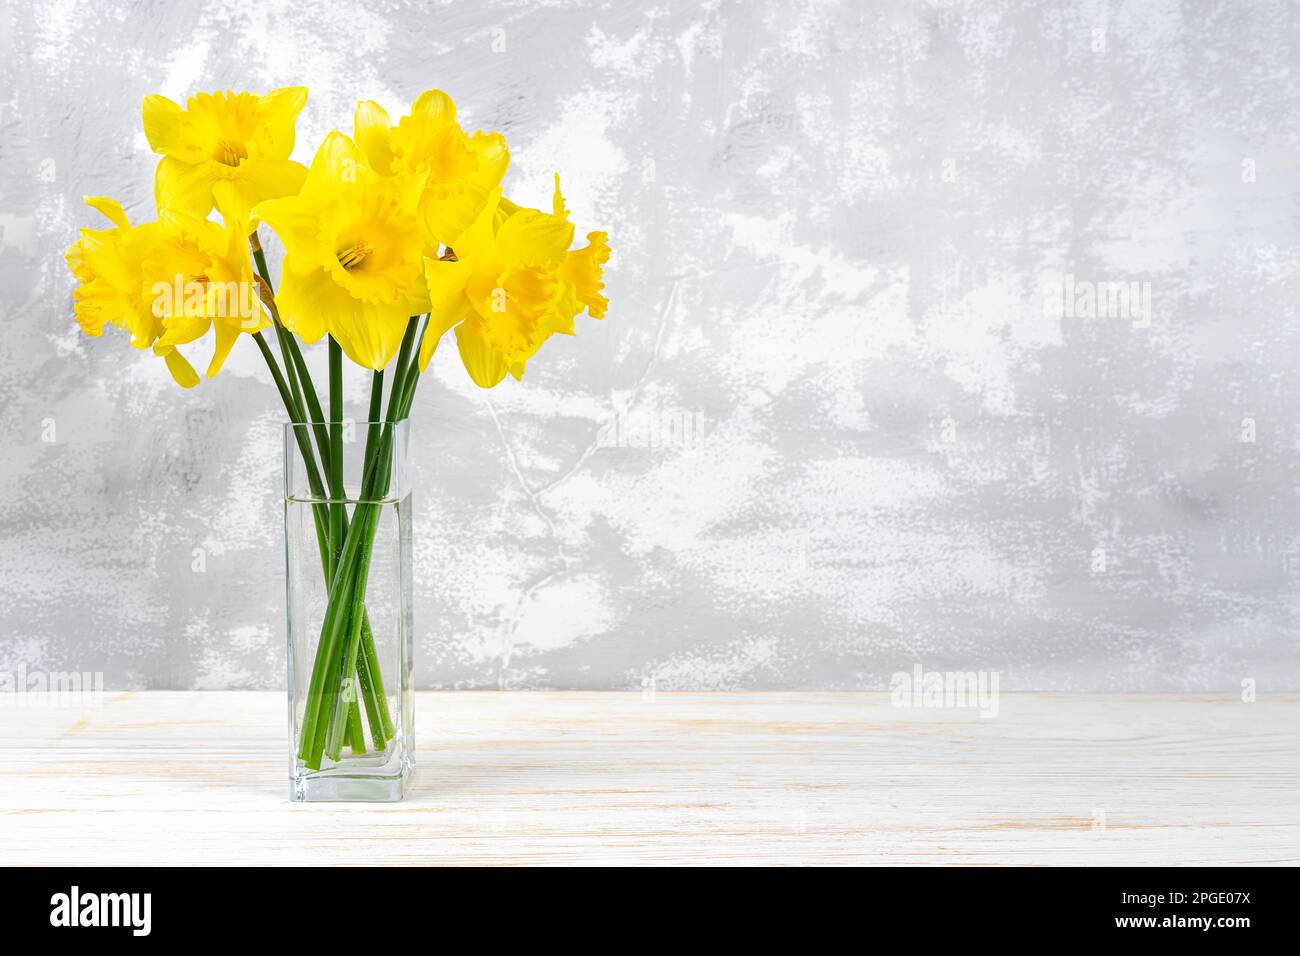 Bouquet de fleurs de jonquilles jaune vif, cloches de Pâques dans un vase sur fond de plâtre blanc avec espace de copie. Fleurs printanières en fleurs. Maquette, modèle Banque D'Images